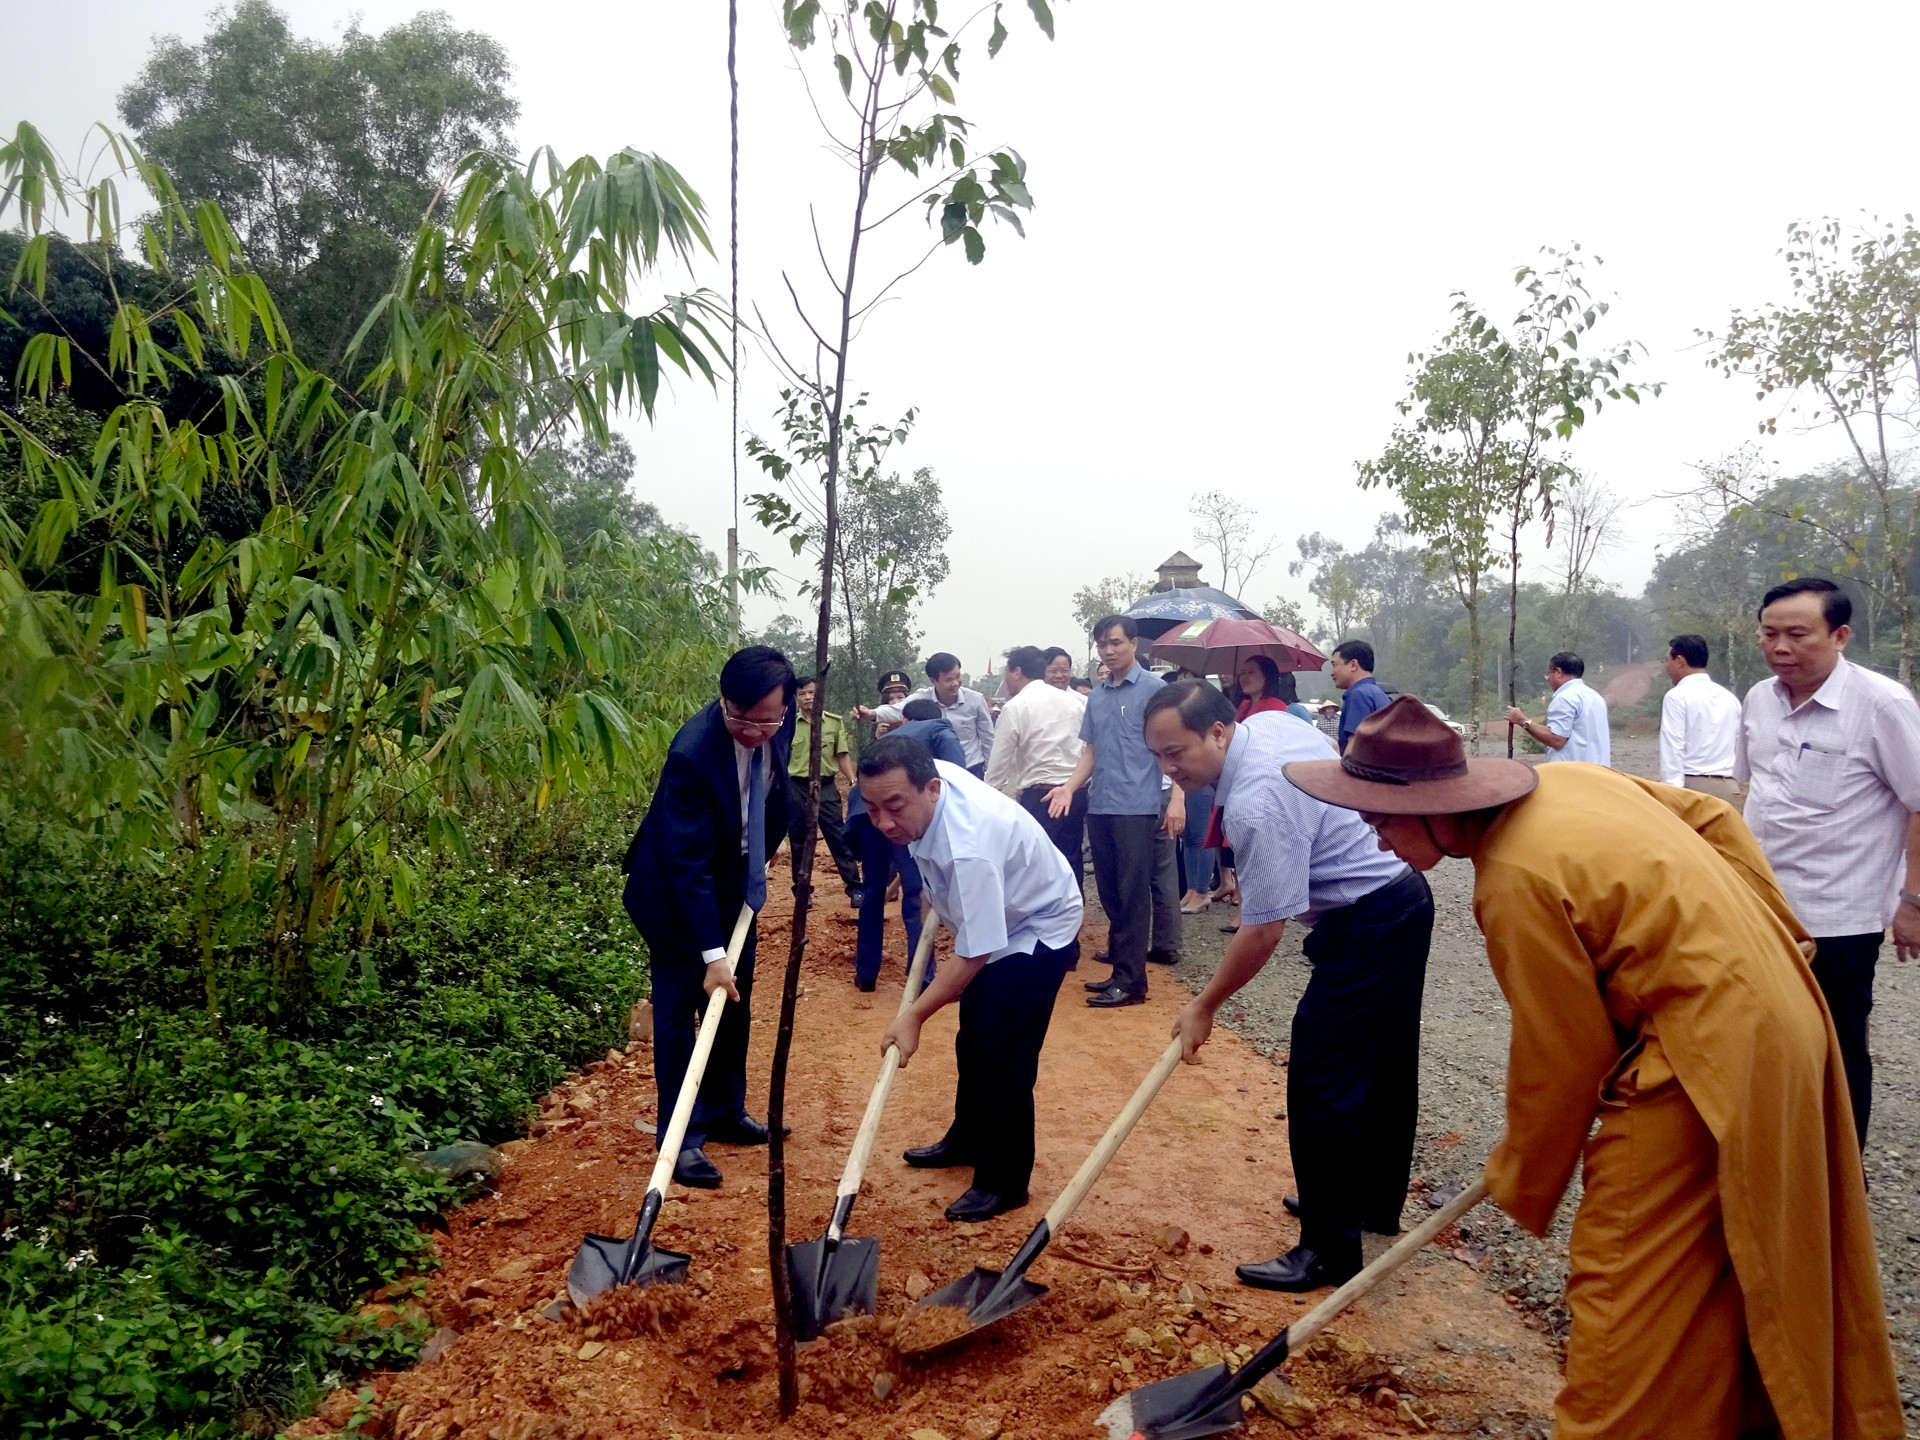  Lãnh đạo huyện Yên Thành tham gia trồng cây tại khuôn viên Thiền viện Trúc Lâm. Ảnh: Đăng Trí